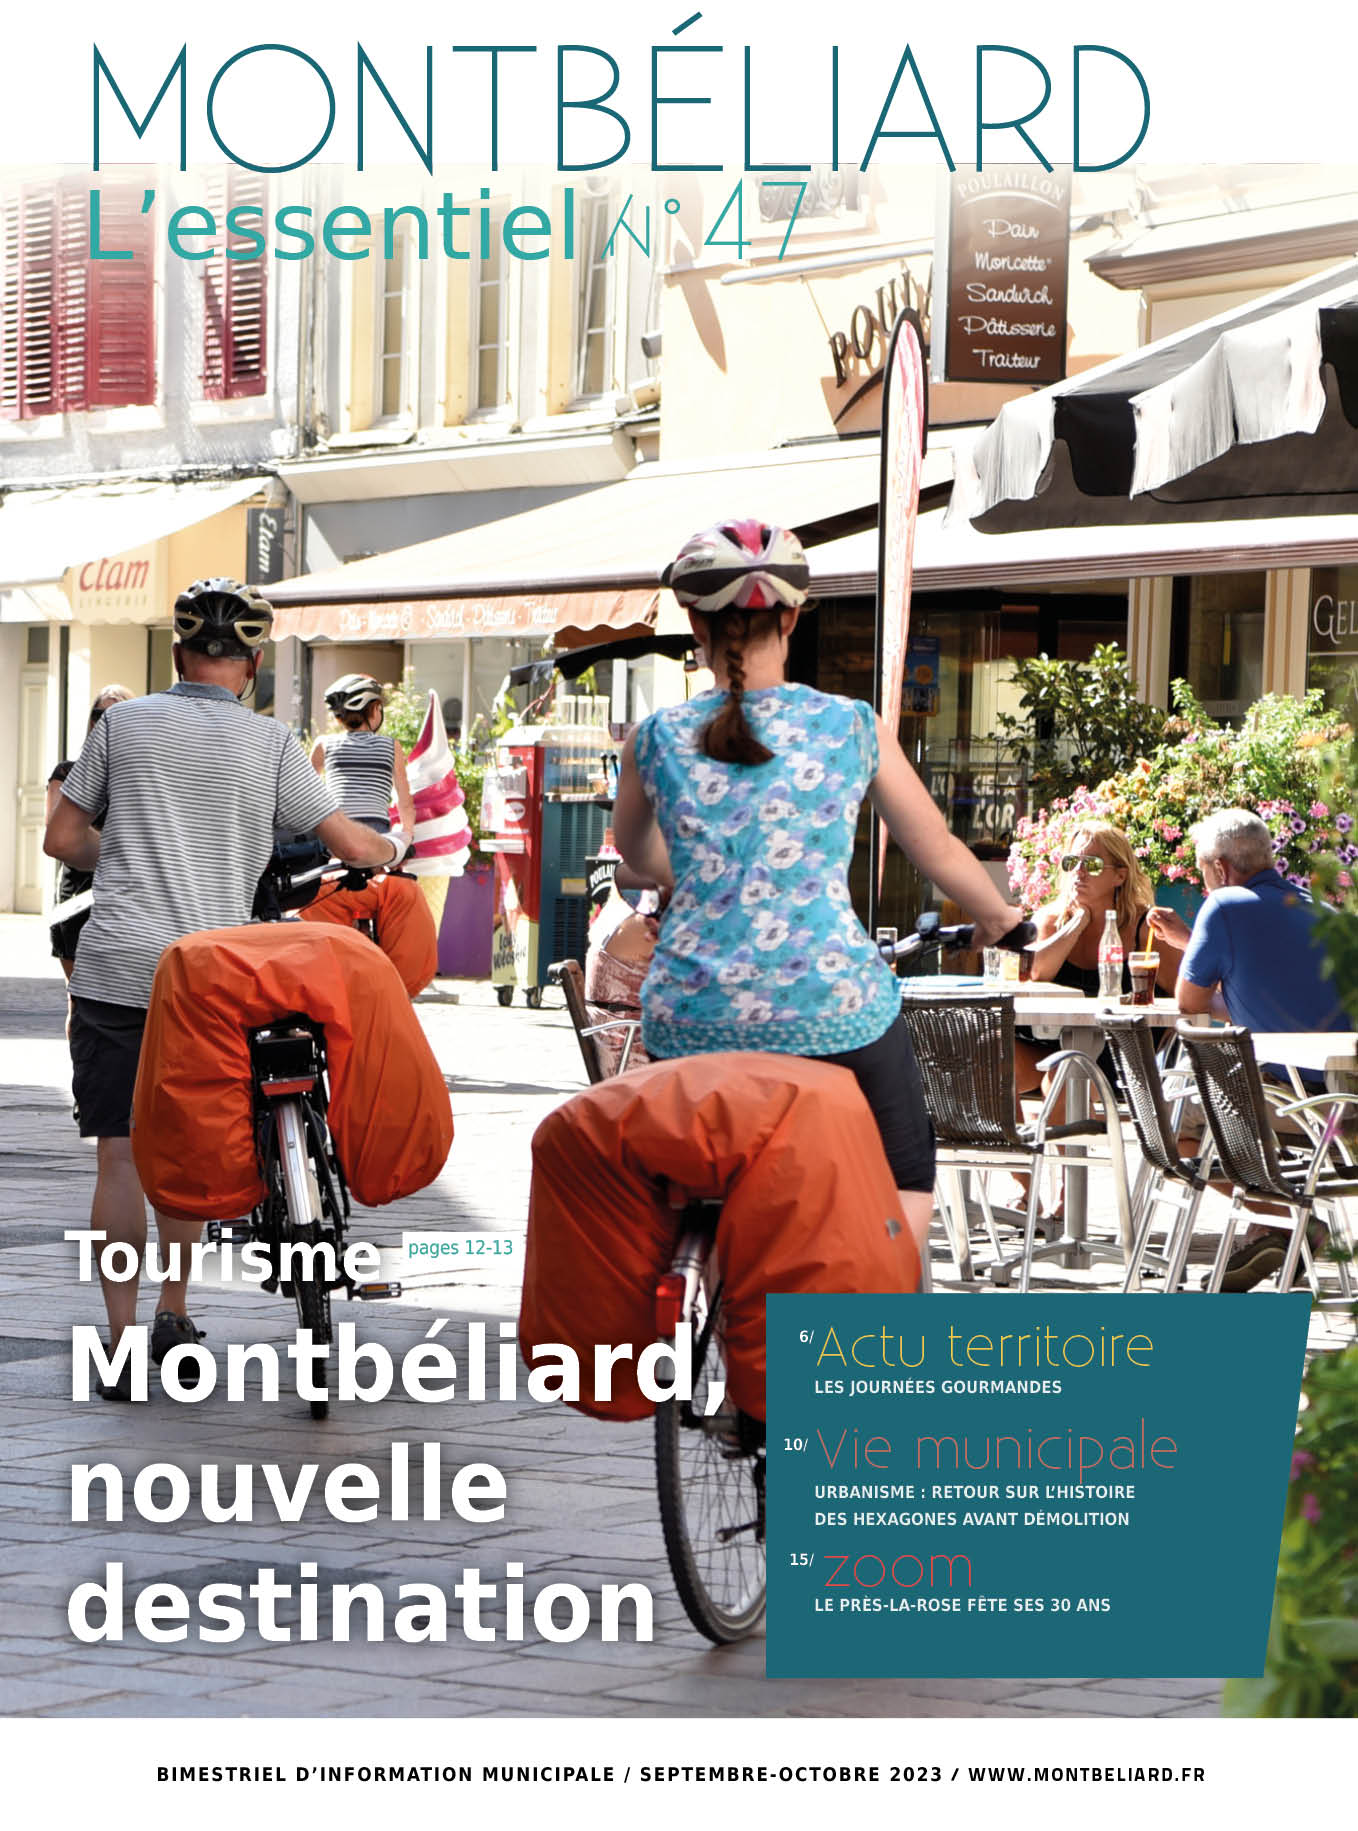 Montbéliard L'essentiel n°47 - septembre octobre 2023